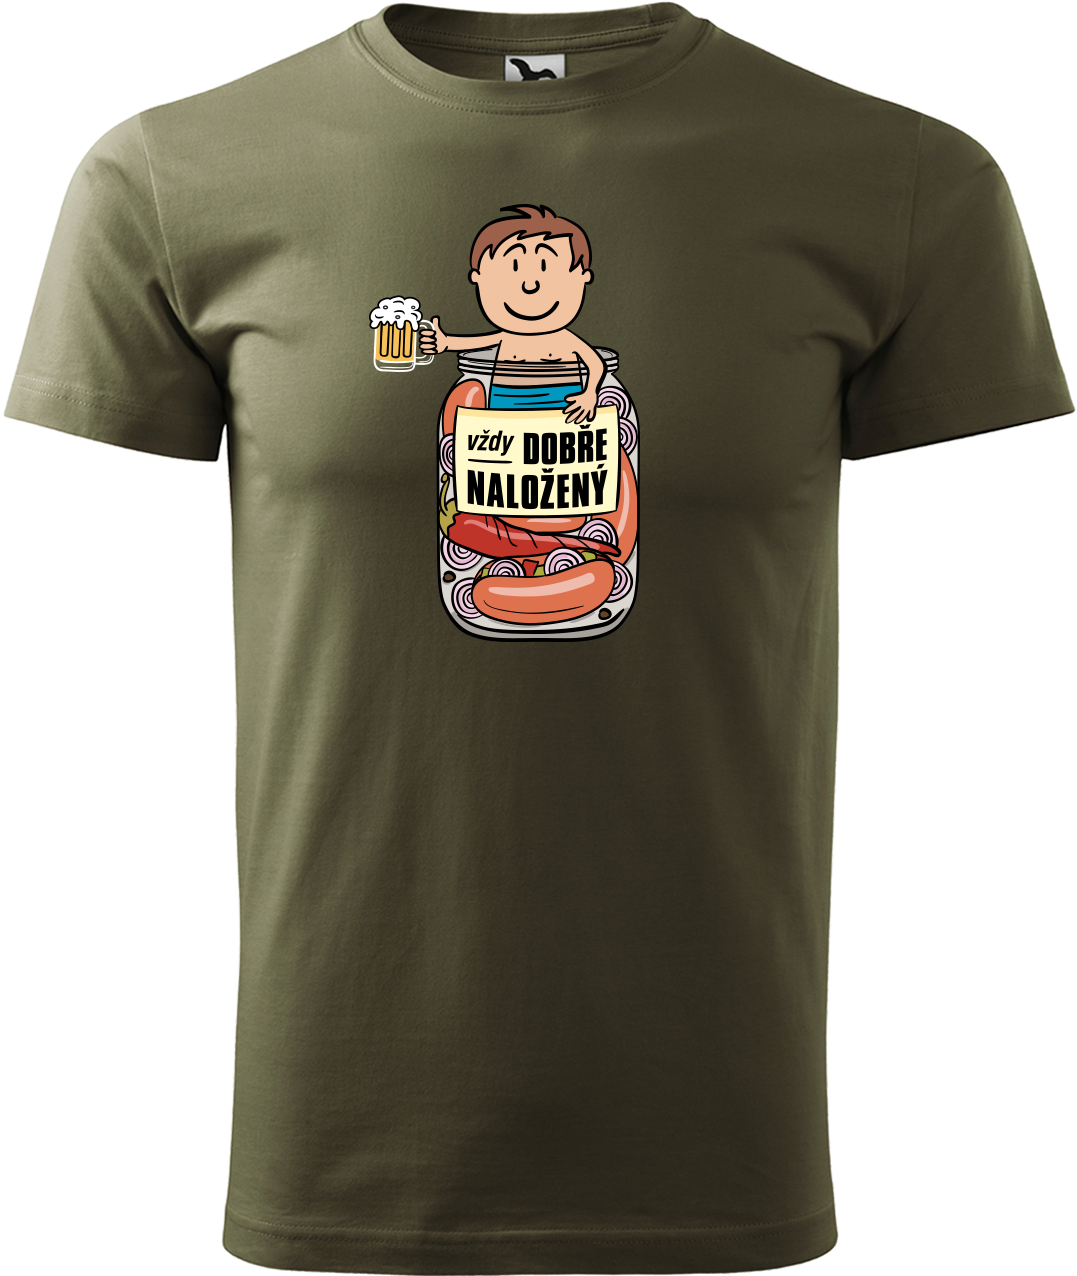 Vtipné tričko - Vždycky dobře naložený Velikost: L, Barva: Military (69)